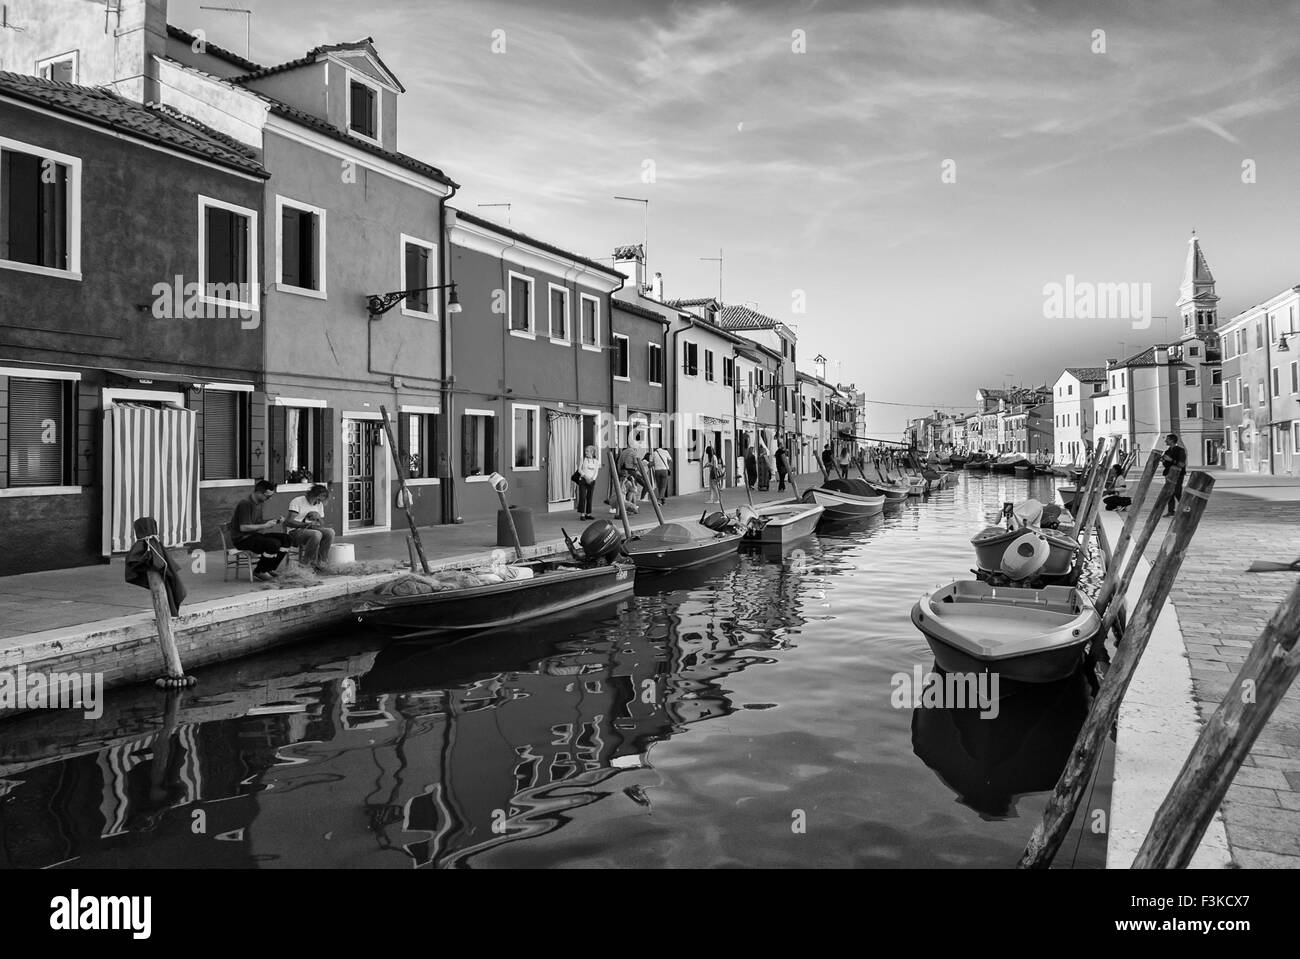 BURANO ITALIE VERS SEPTEMBRE 2015 : Burano est une île de la lagune de Venise connu pour ses typiques maisons aux couleurs vives et t Banque D'Images